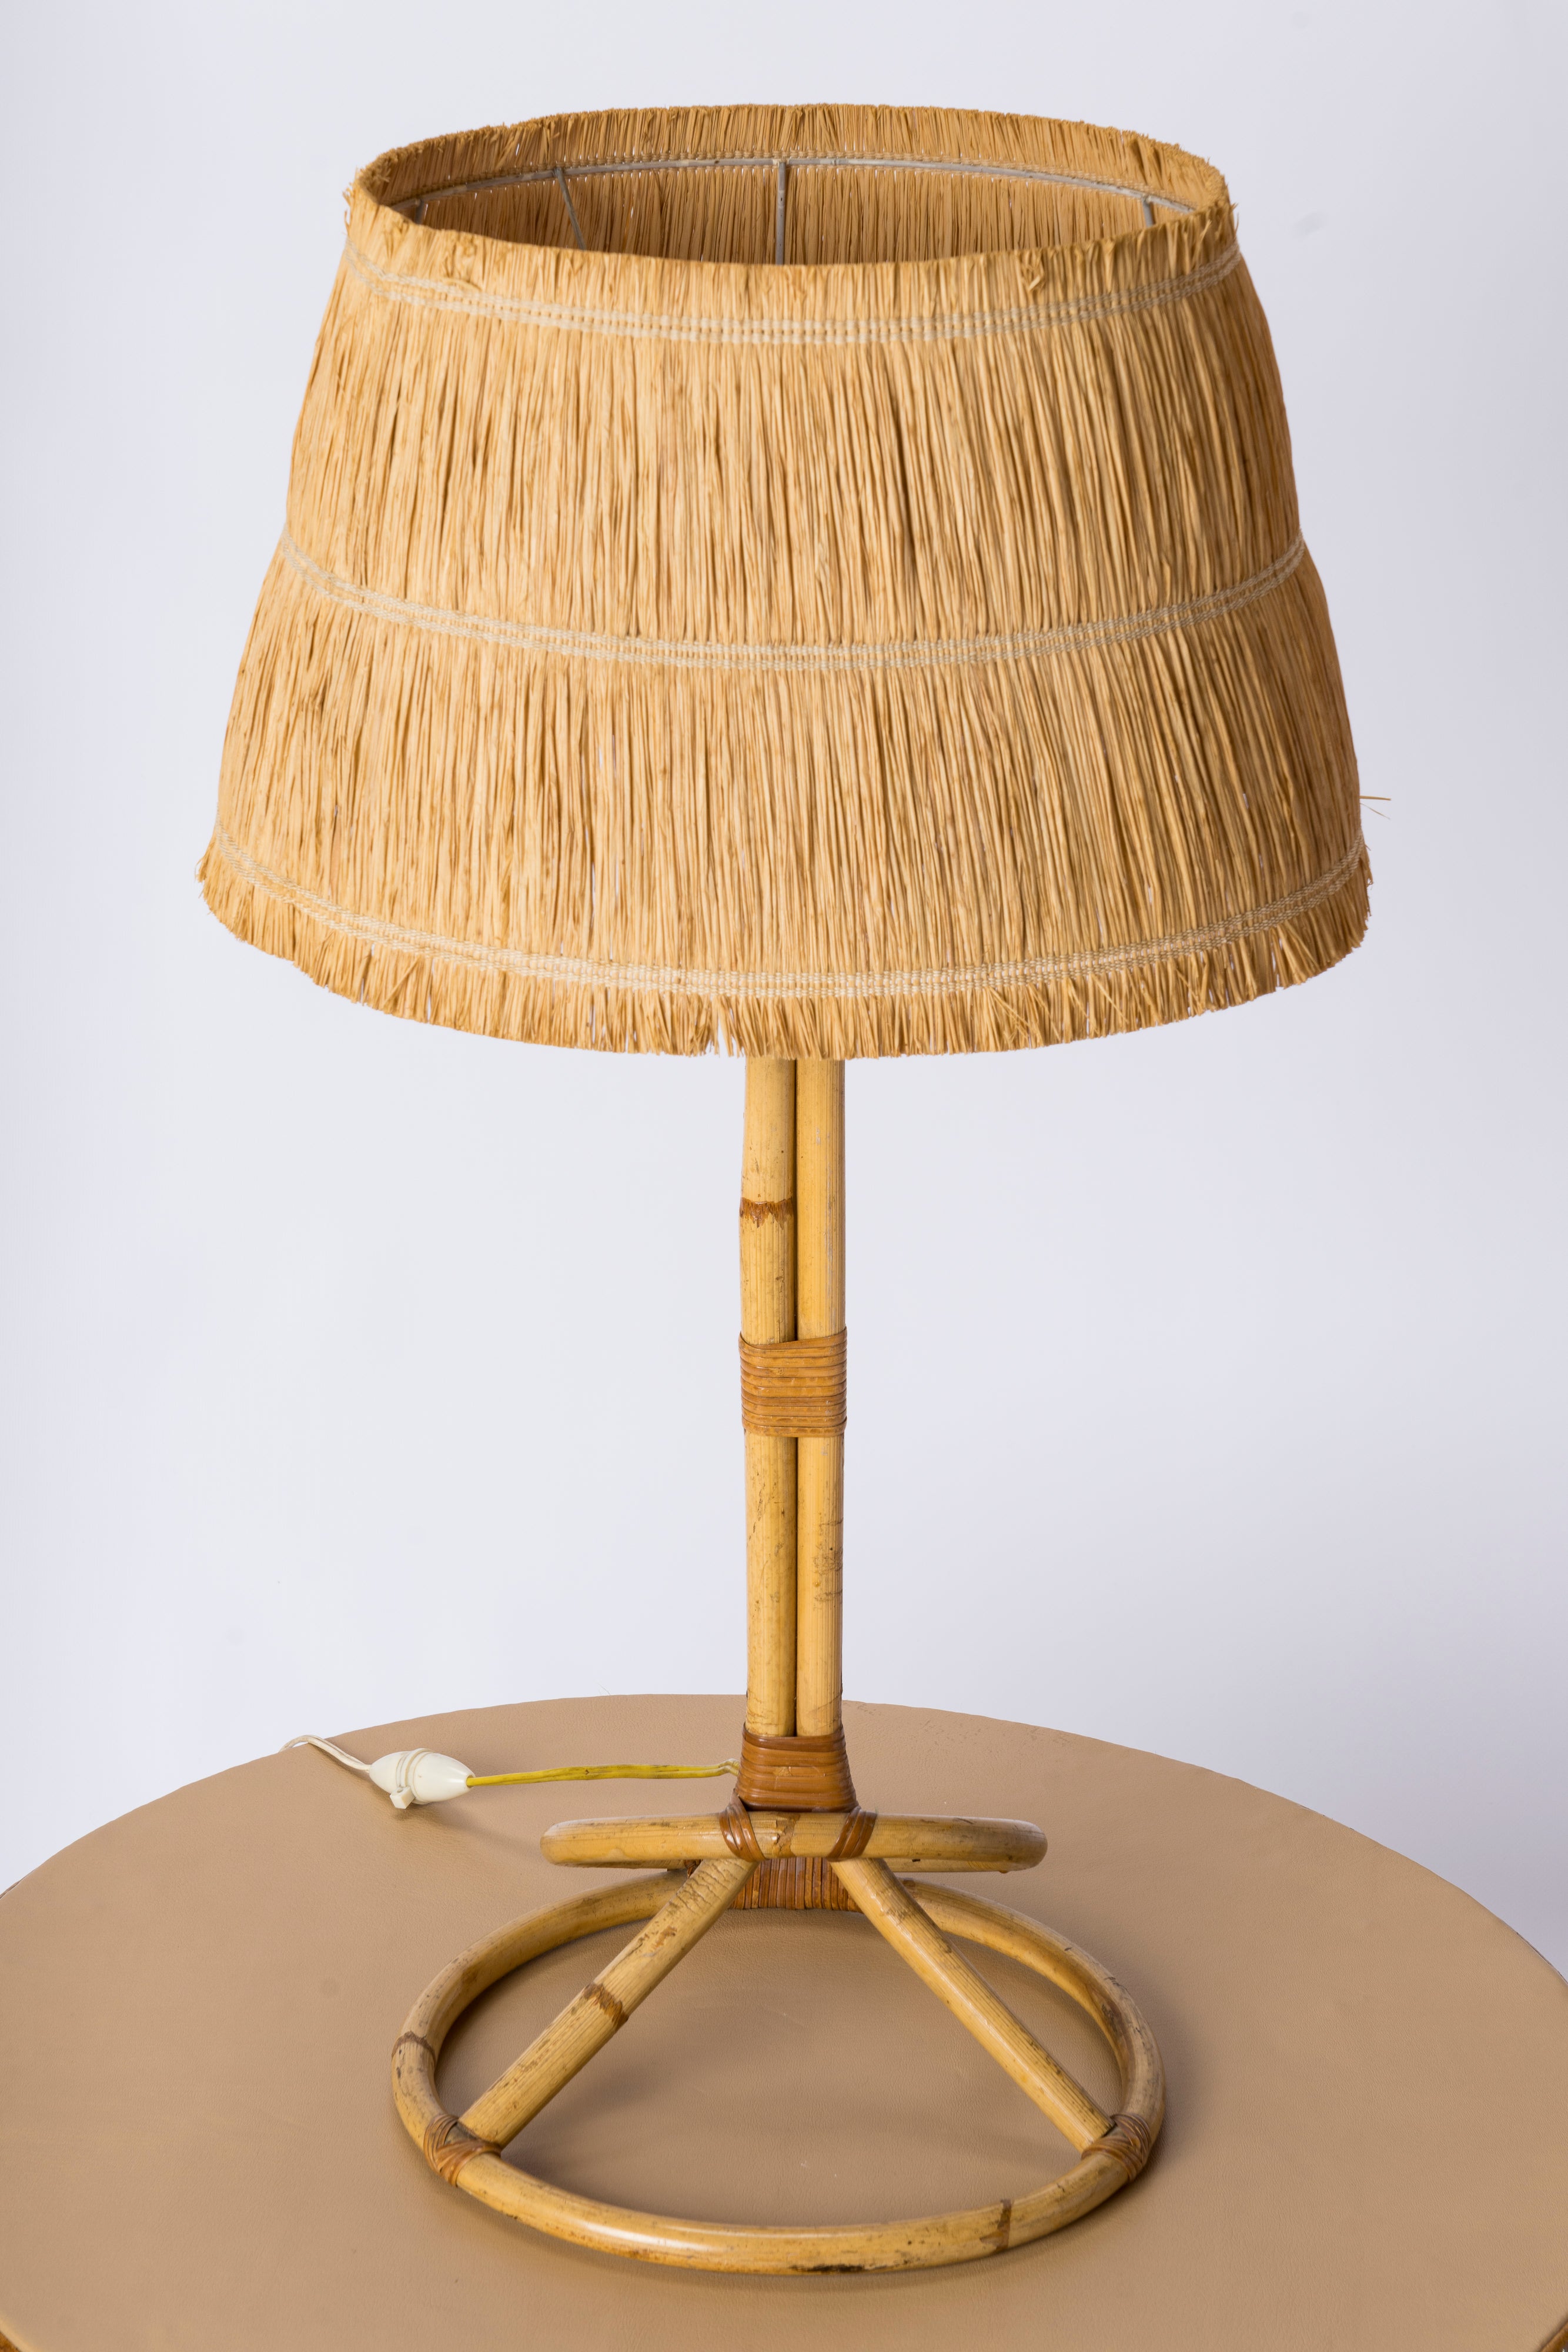 Tall Rattan Table Lamp w. Raffia Shade - France 1950's